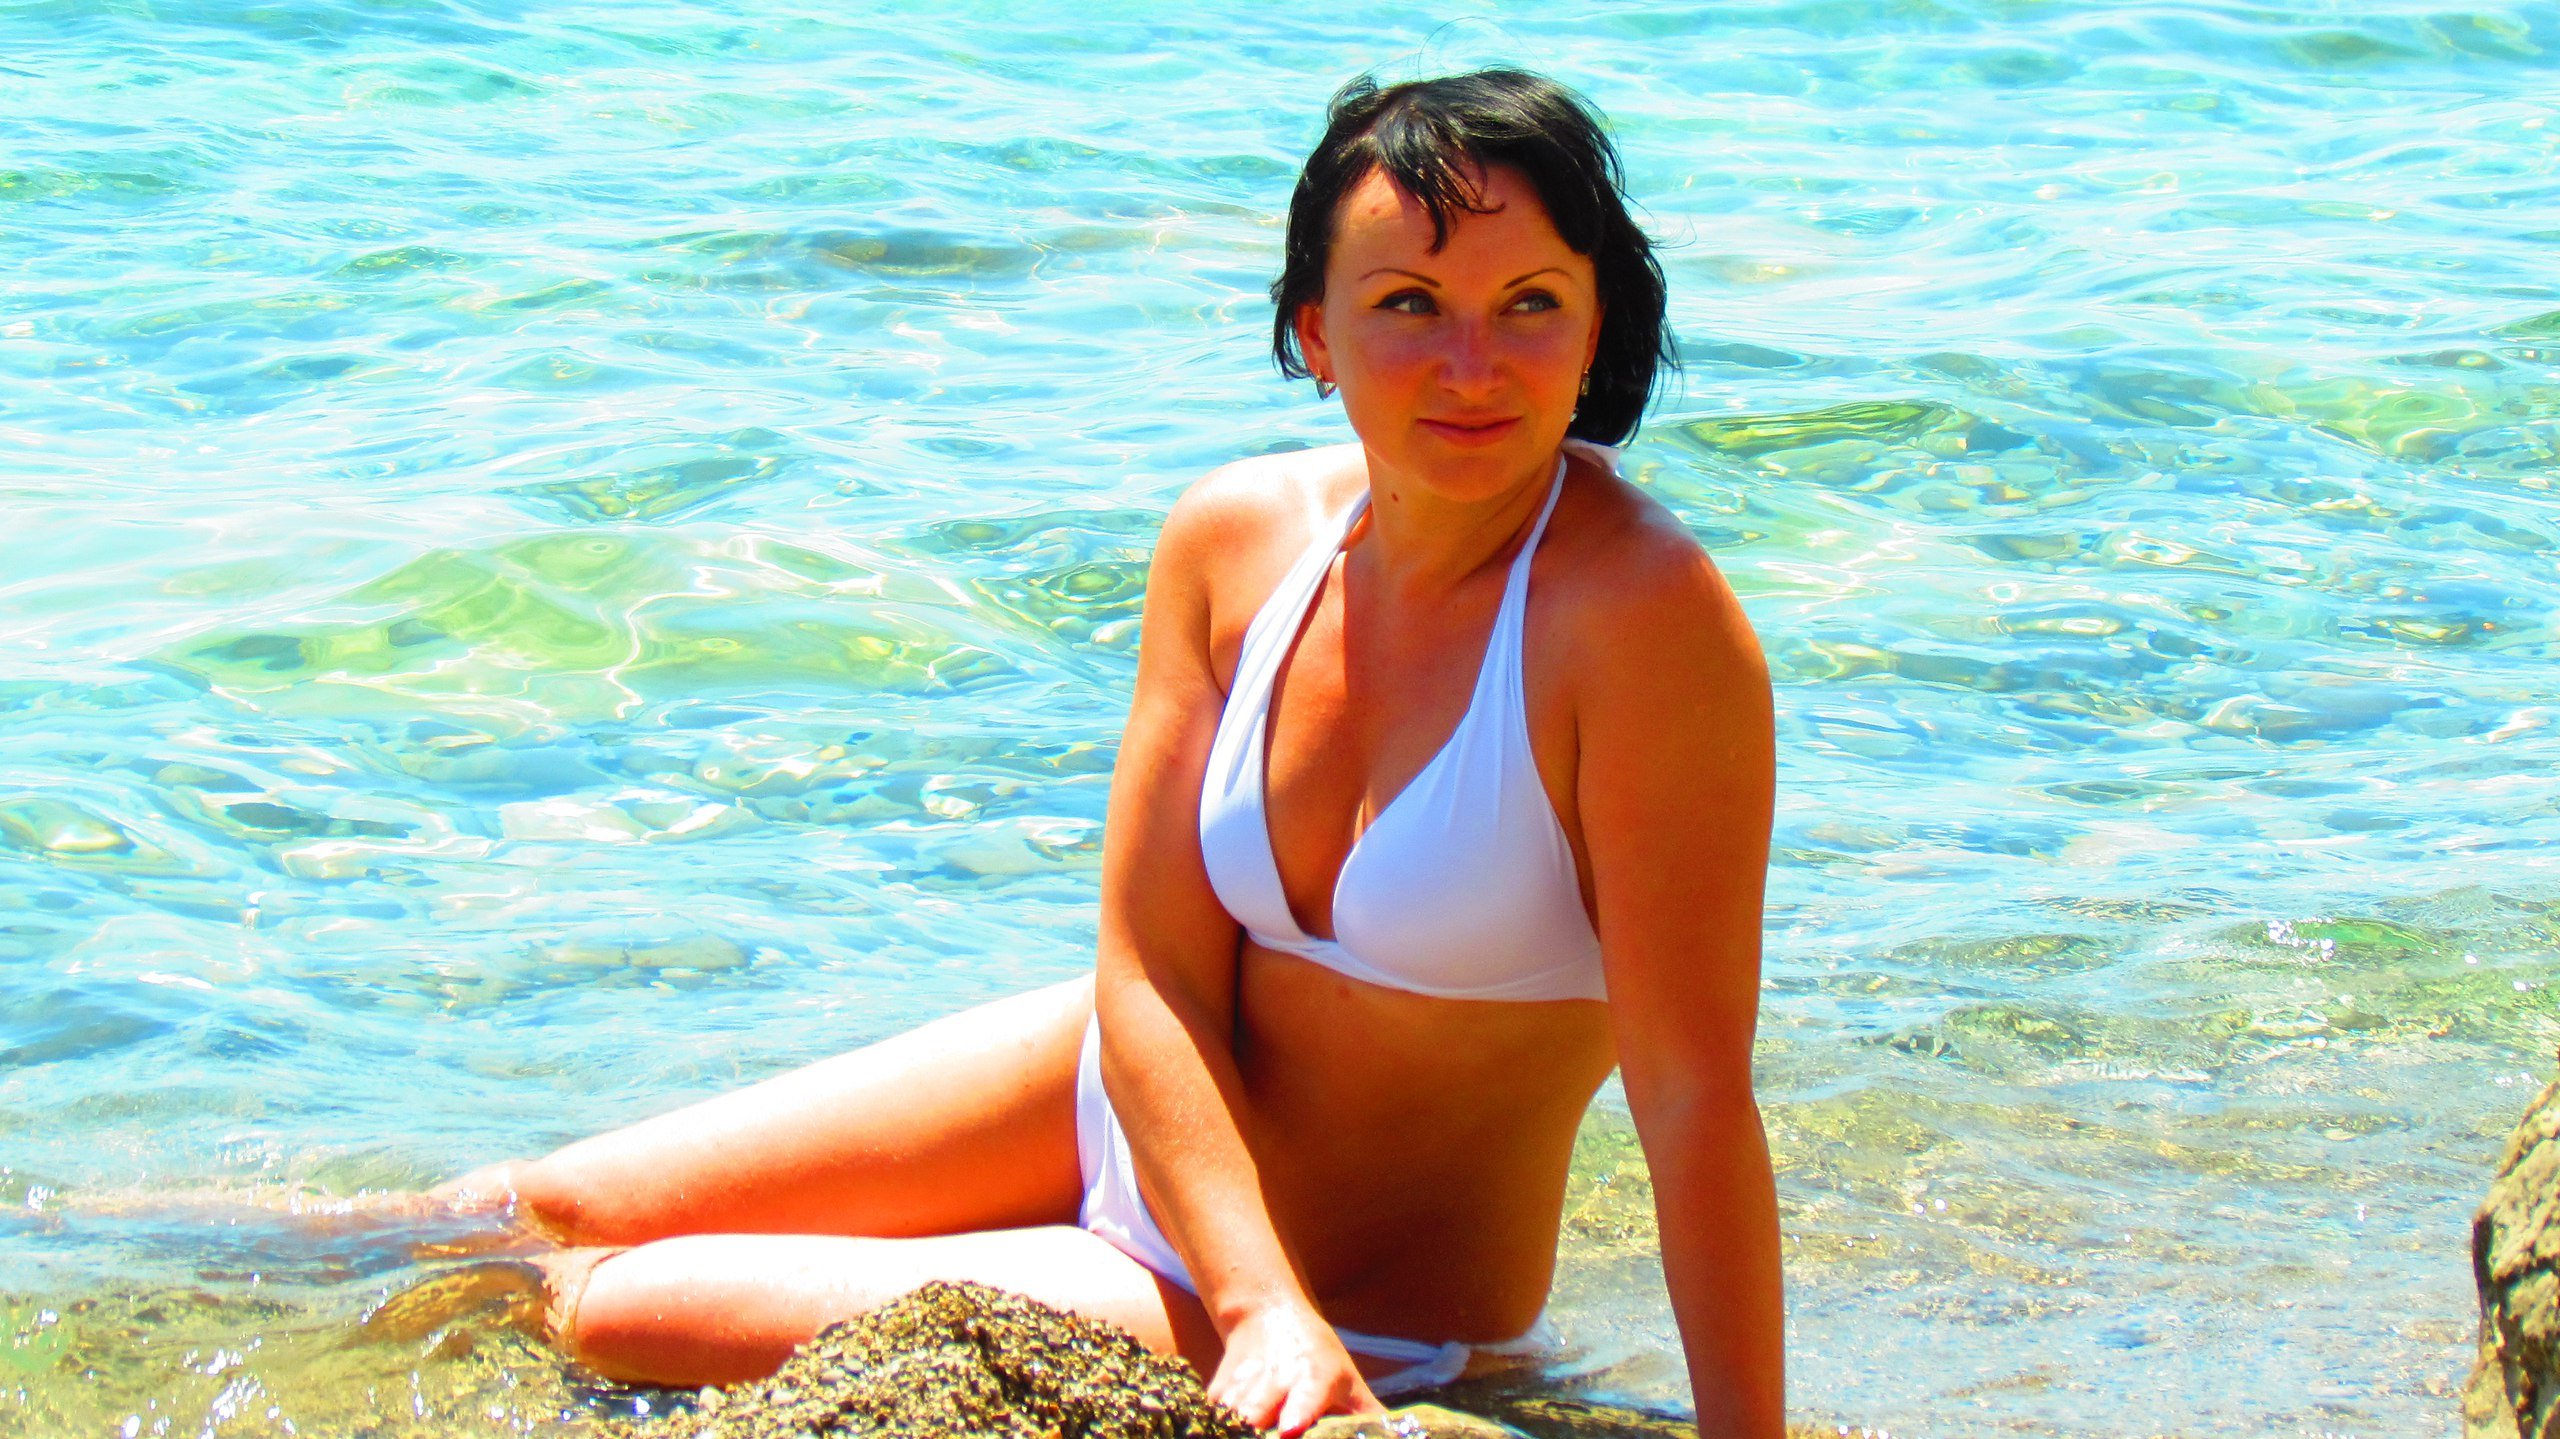 Русская женщина 40 лет в купальнике